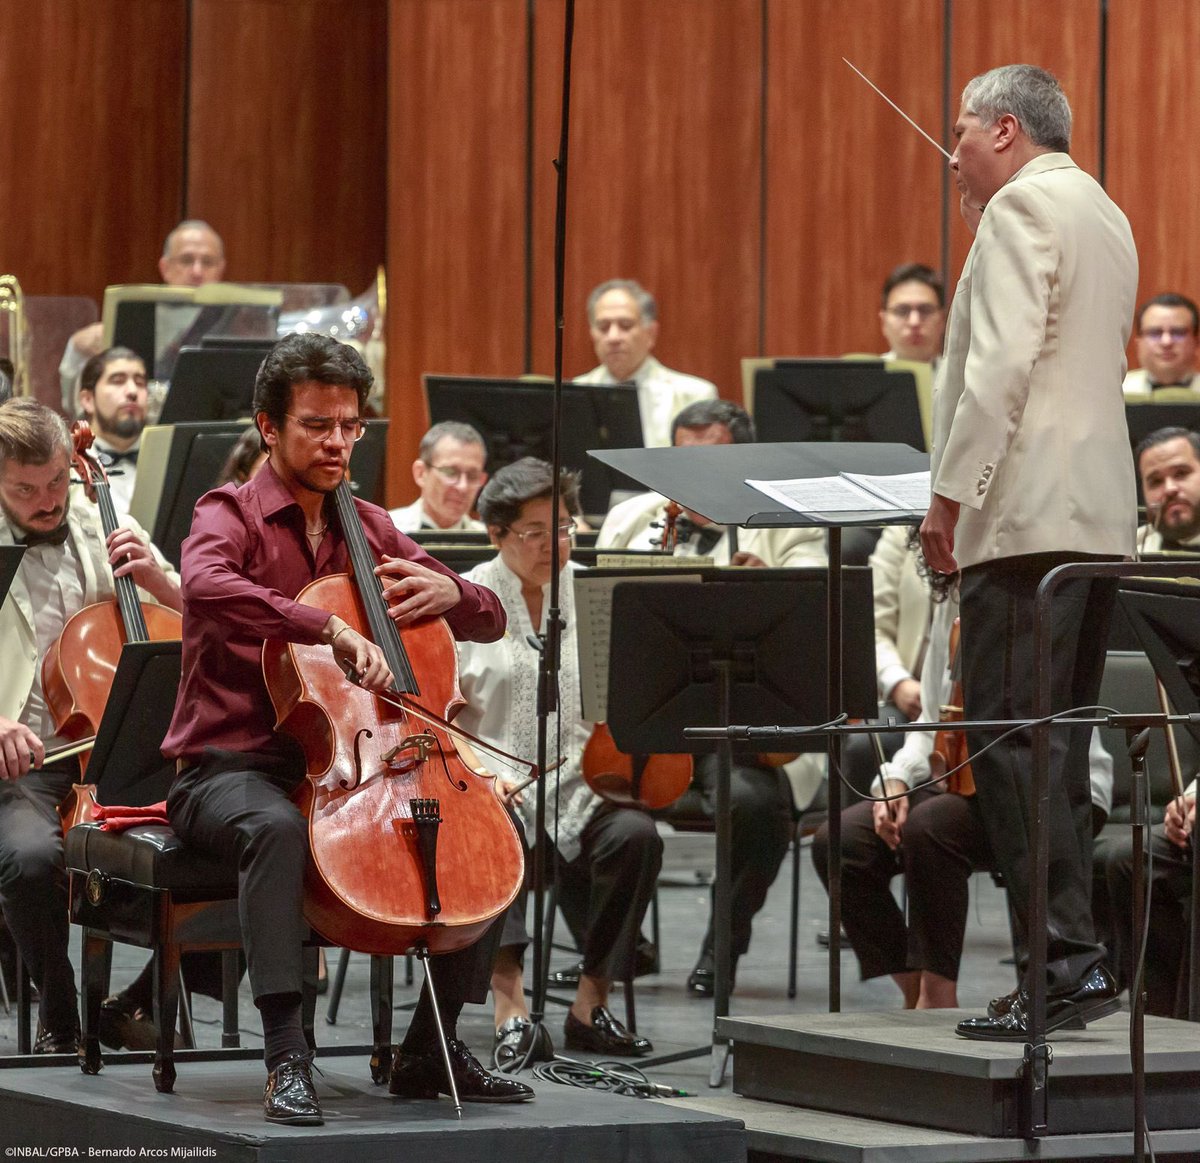 #90AniversarioPBA
La @OSN_MX del @bellasartesinba presentó el concierto ‘Expediente Brahms: Tercera sinfonía’, el cual corresponde a su Primera Temporada 2024, bajo la batuta del director artístico @ludwigcarrasco y con la gran ejecución de Rolando Fernández en el violonchelo.